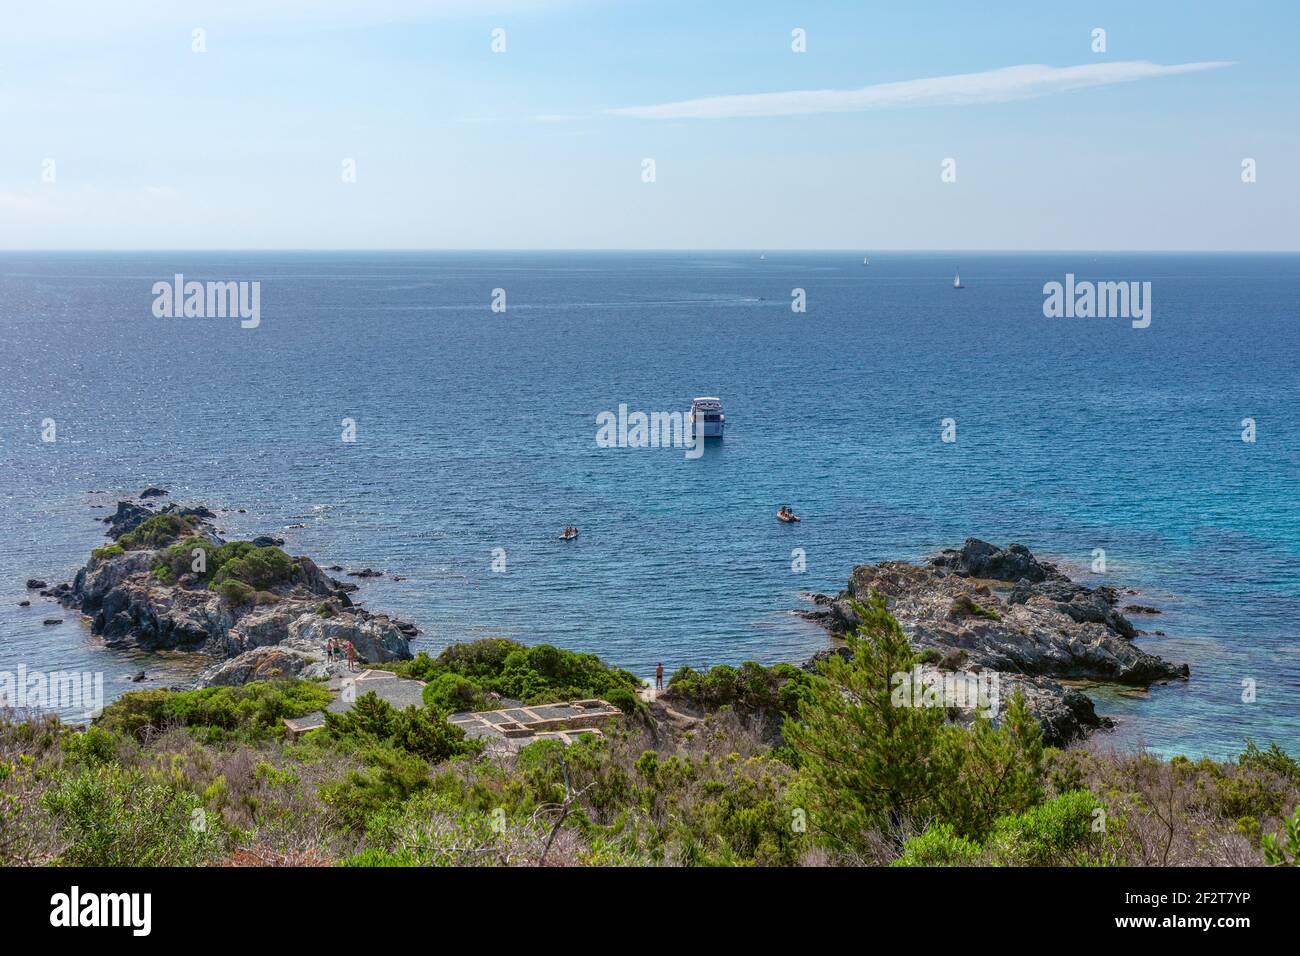 Schöne Aussicht auf die felsige Küste der Insel Elba, blaues Meer und Boote. Insel Elba, Toskana, Italien Stockfoto